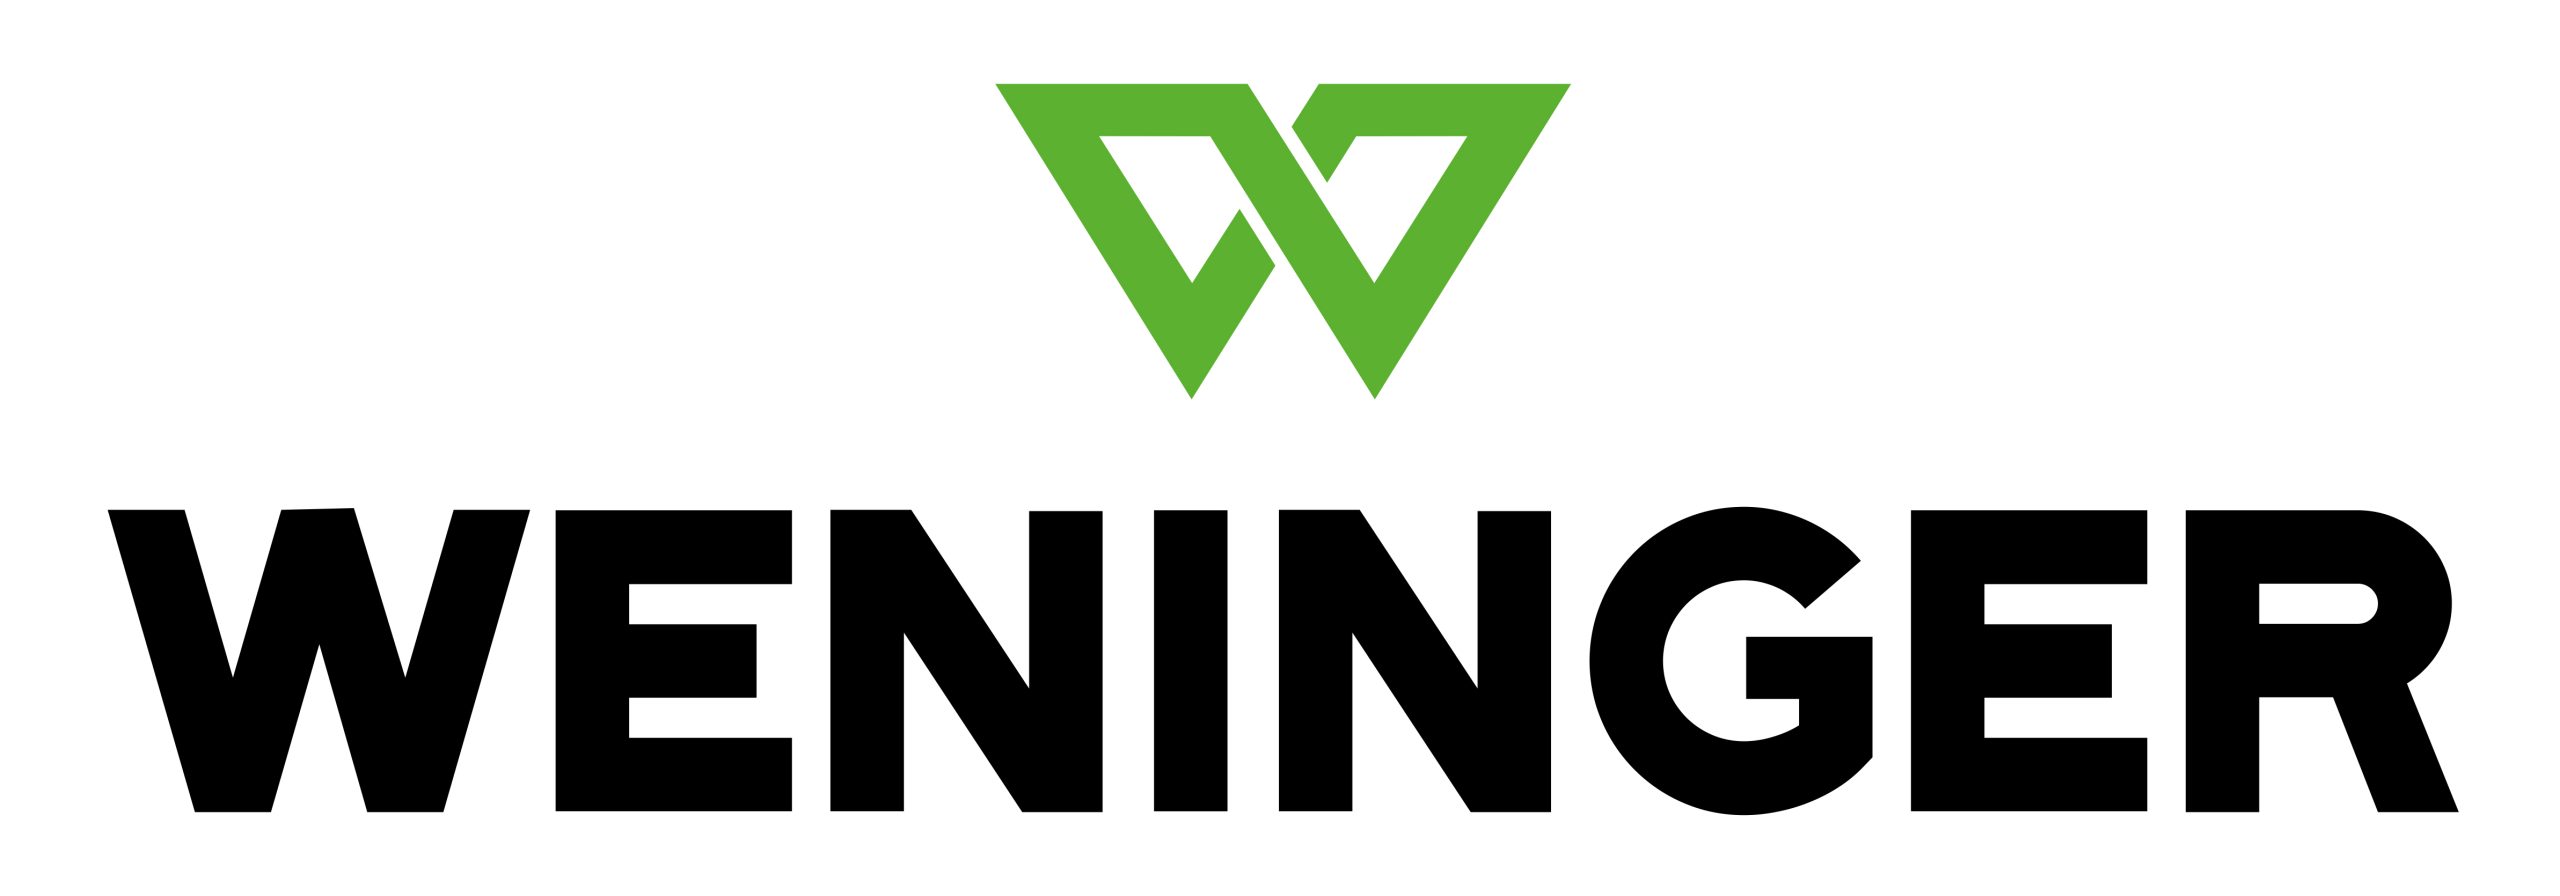 logo_weninger_standard_cmyk